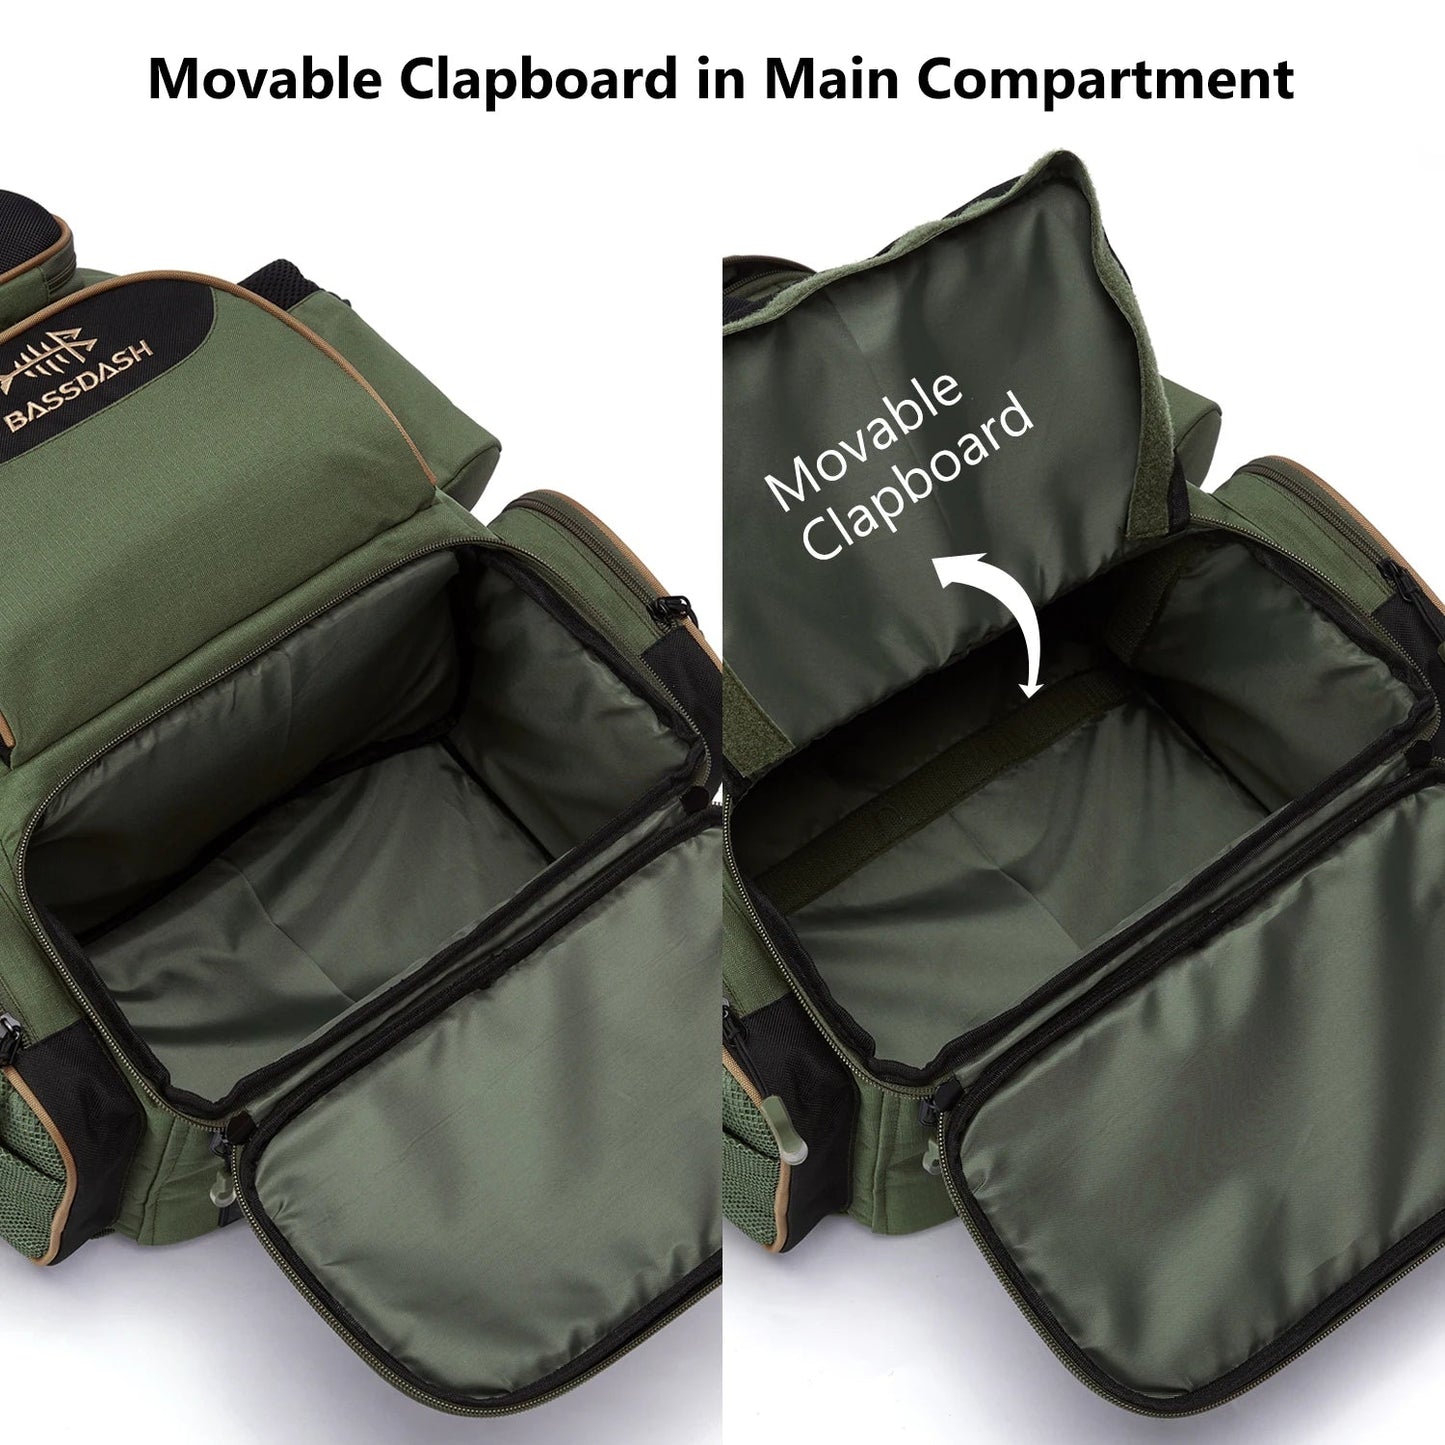 Multi Fishing Gear Backpack